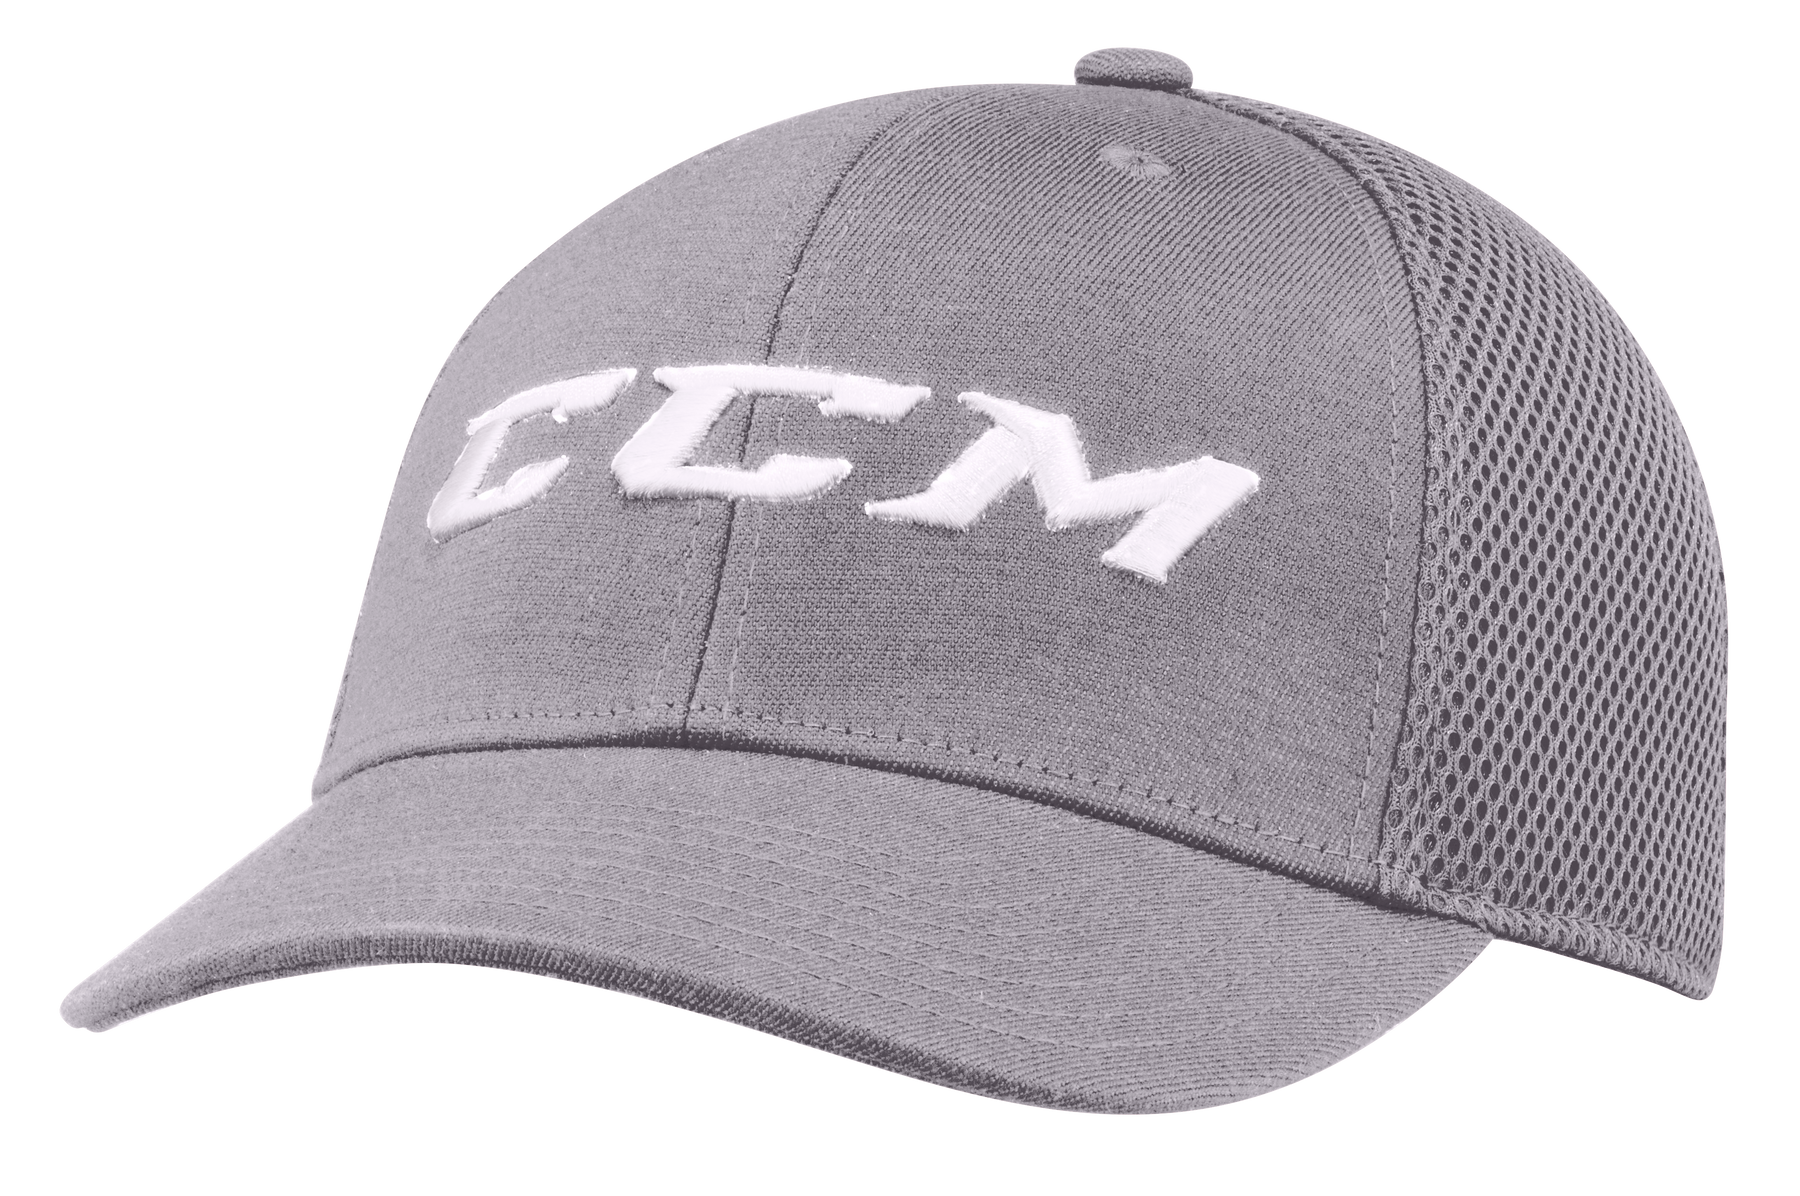 CCM casquette style camionneur core adulte –